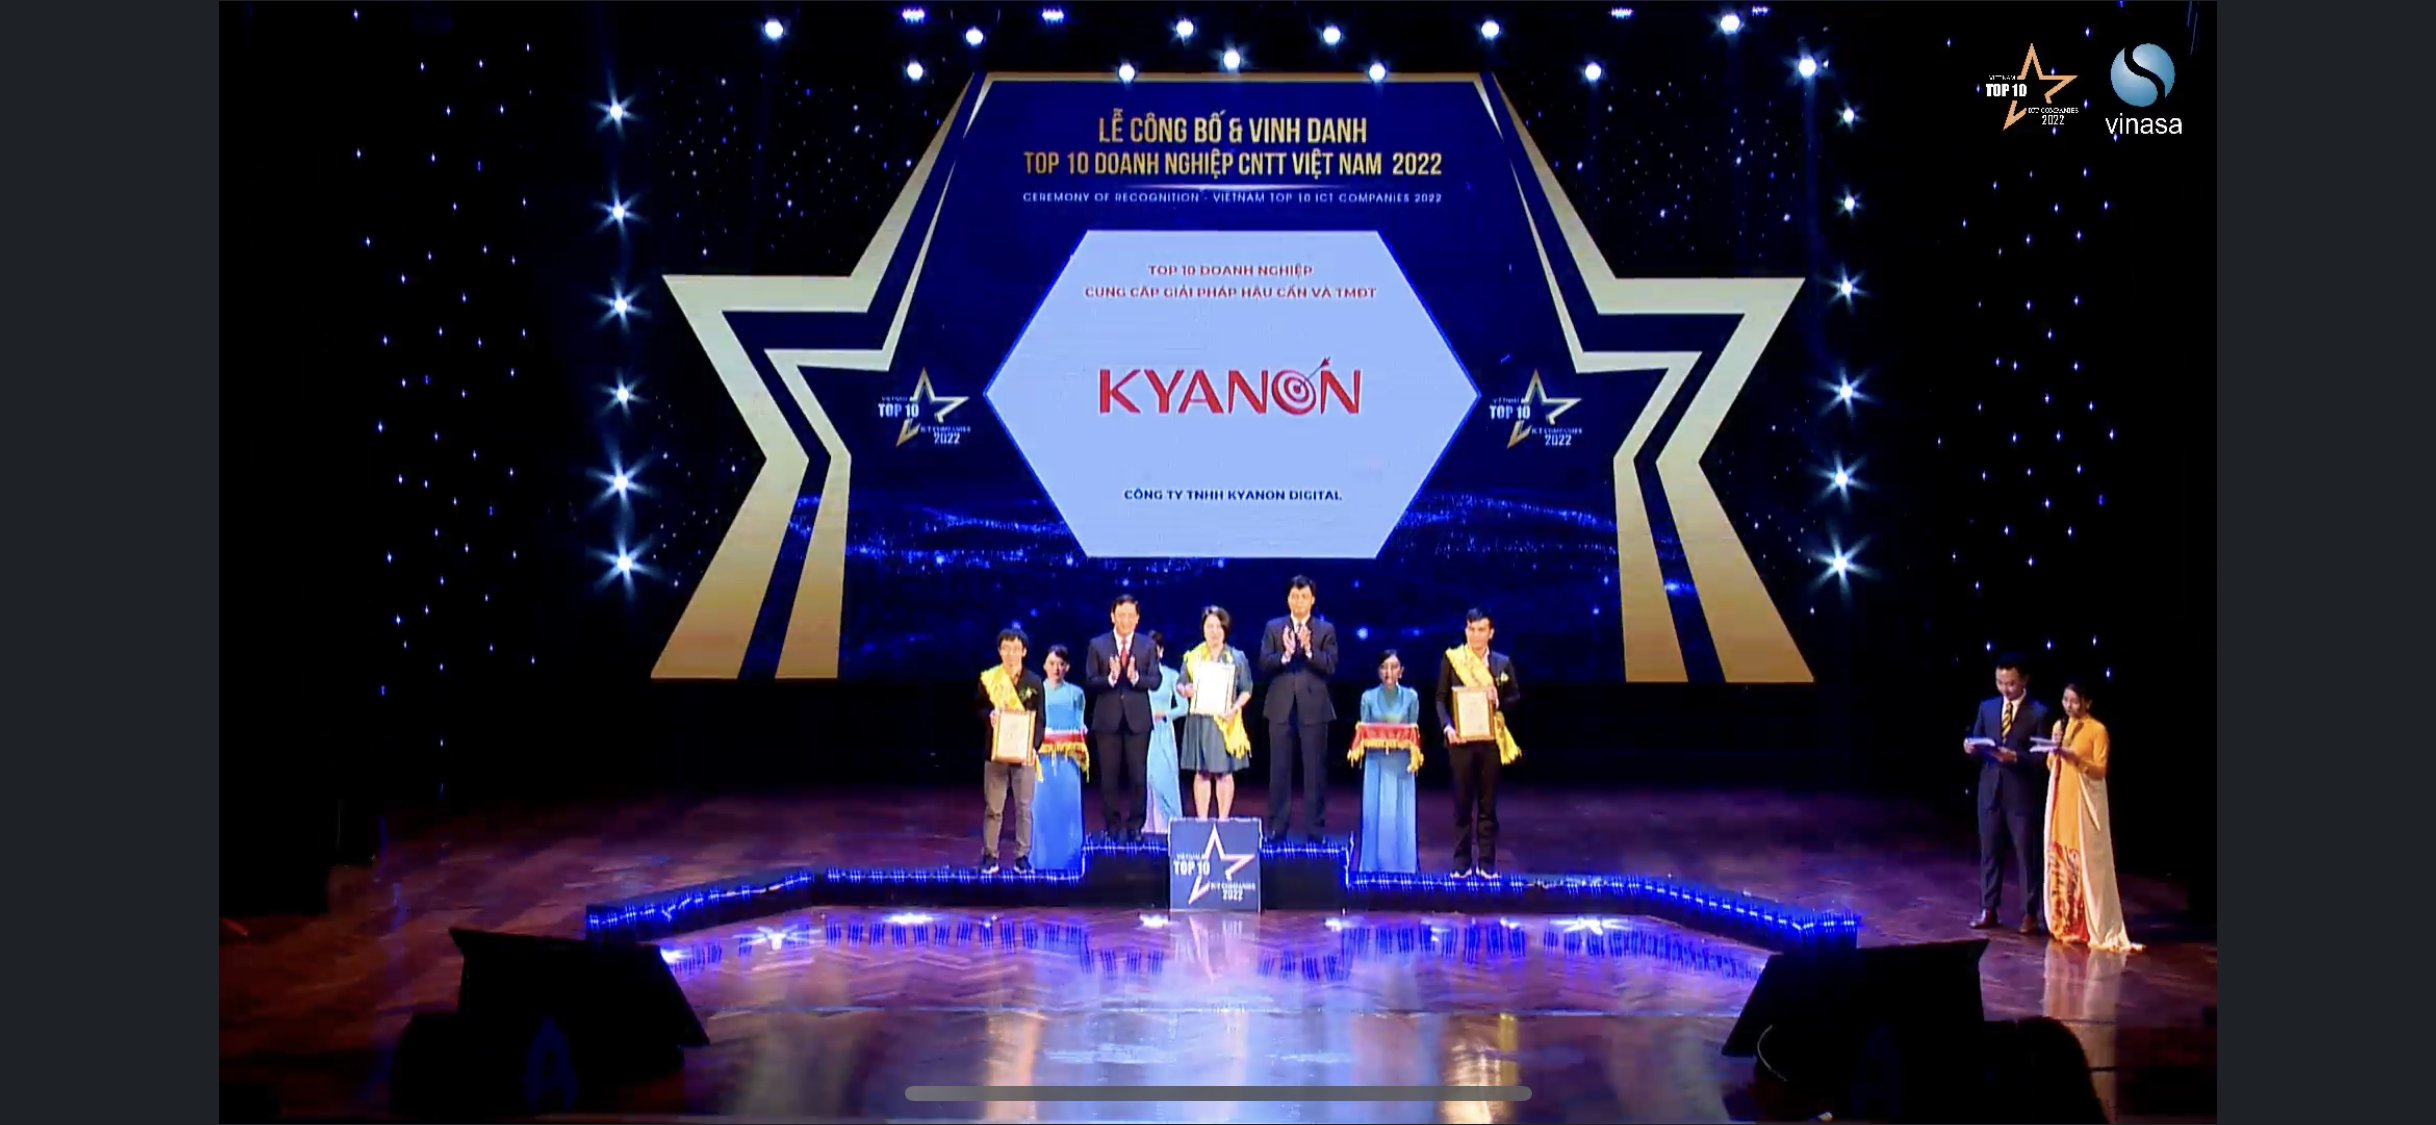 Kyanon cung cấp giải pháp chuyển đổi số linh hoạt dành cho doanh nghiệp